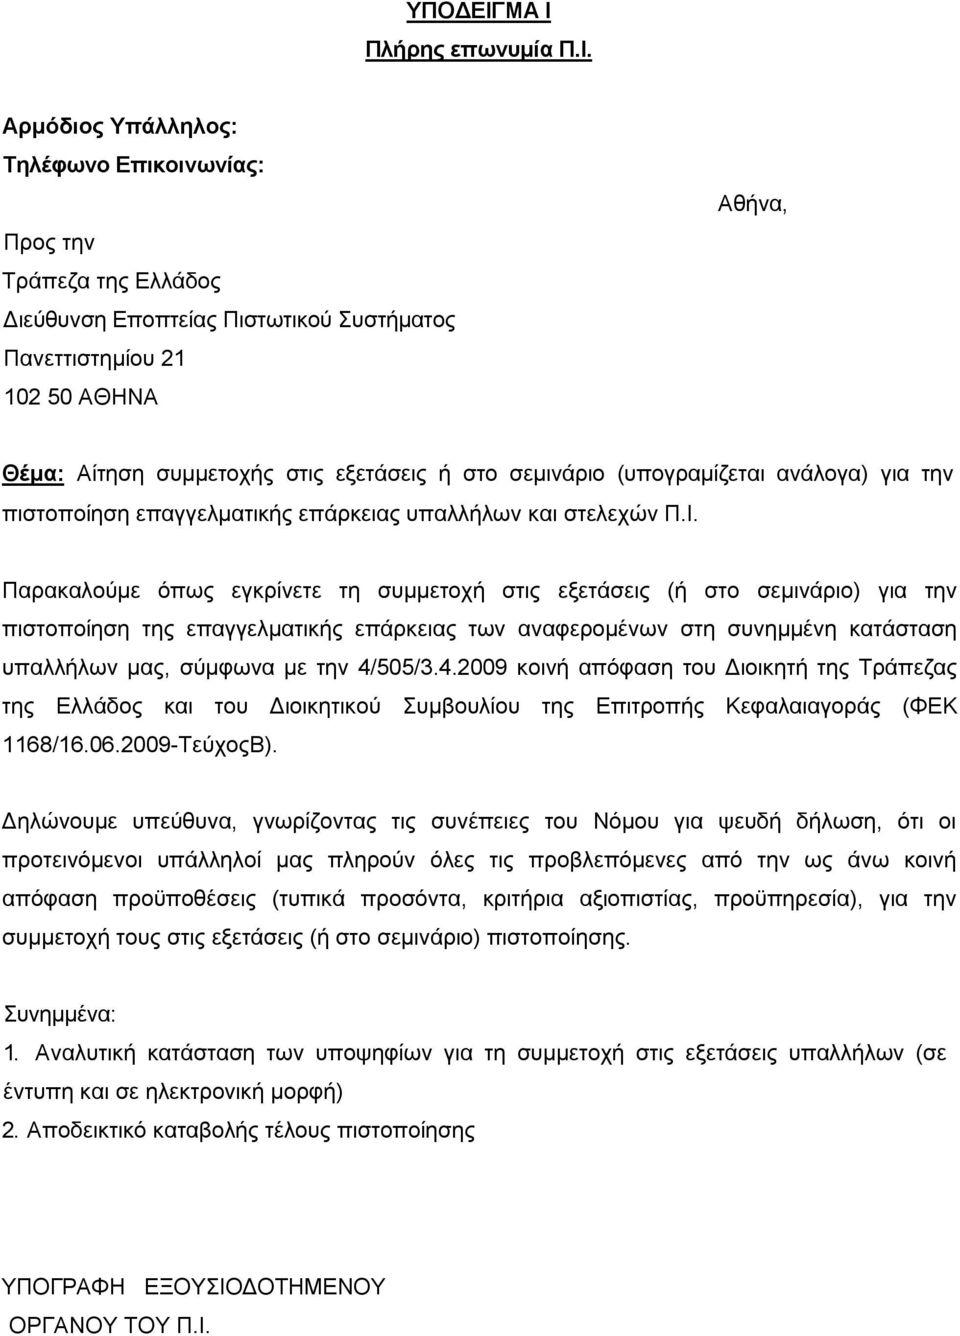 Αρμόδιος Υπάλληλος: Τηλέφωνο Επικοινωνίας: Προς την Τράπεζα της Ελλάδος Διεύθυνση Εποπτείας Πιστωτικού Συστήματος Πανεττιστημίου 21 102 50 ΑΘΗΝΑ Αθήνα, Θέμα: Αίτηση συμμετοχής στις εξετάσεις ή στο